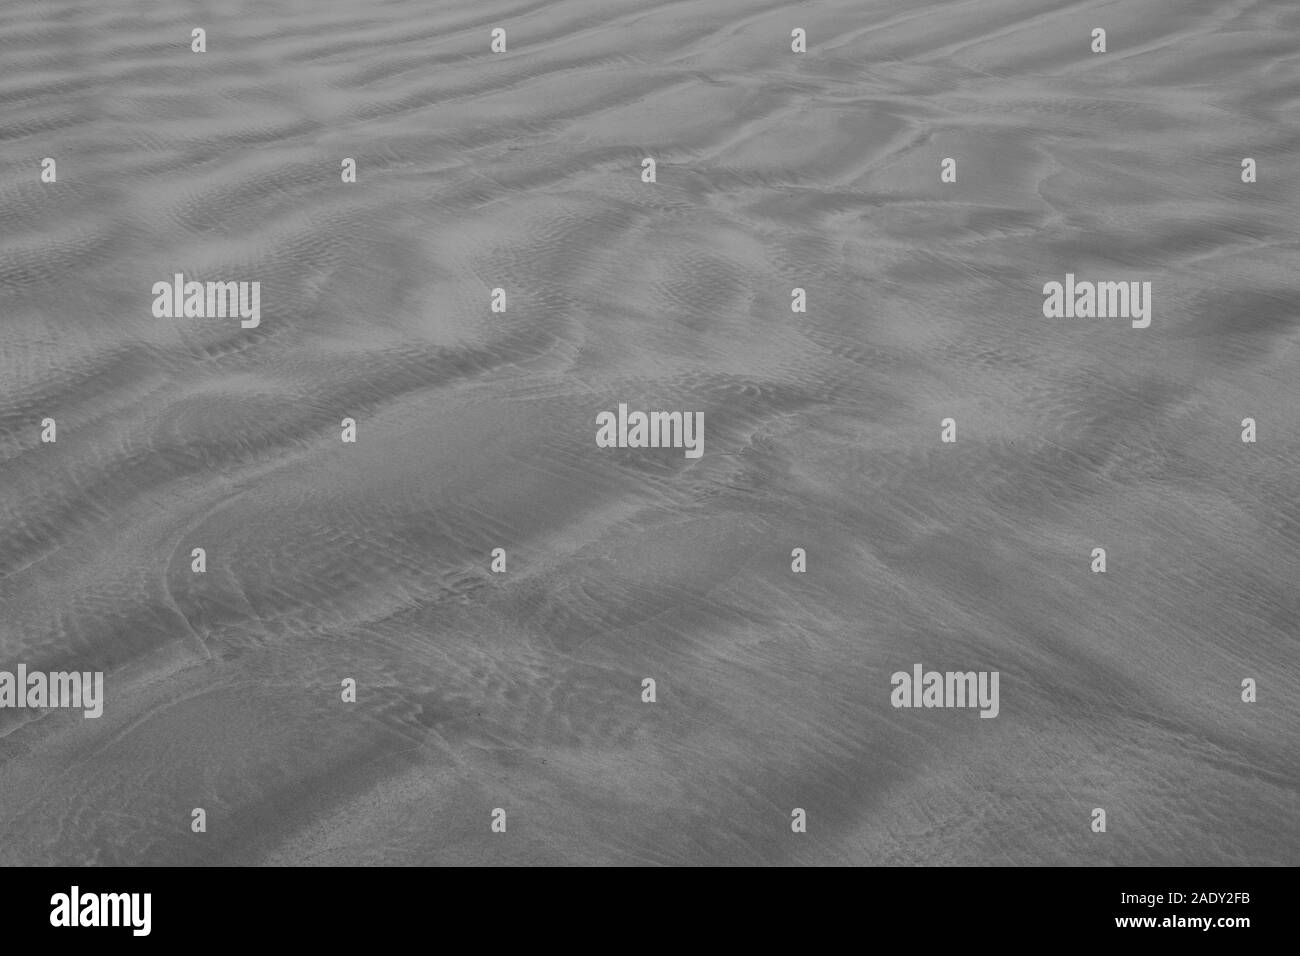 Strand Sand Textur in Graustufen Stockfoto